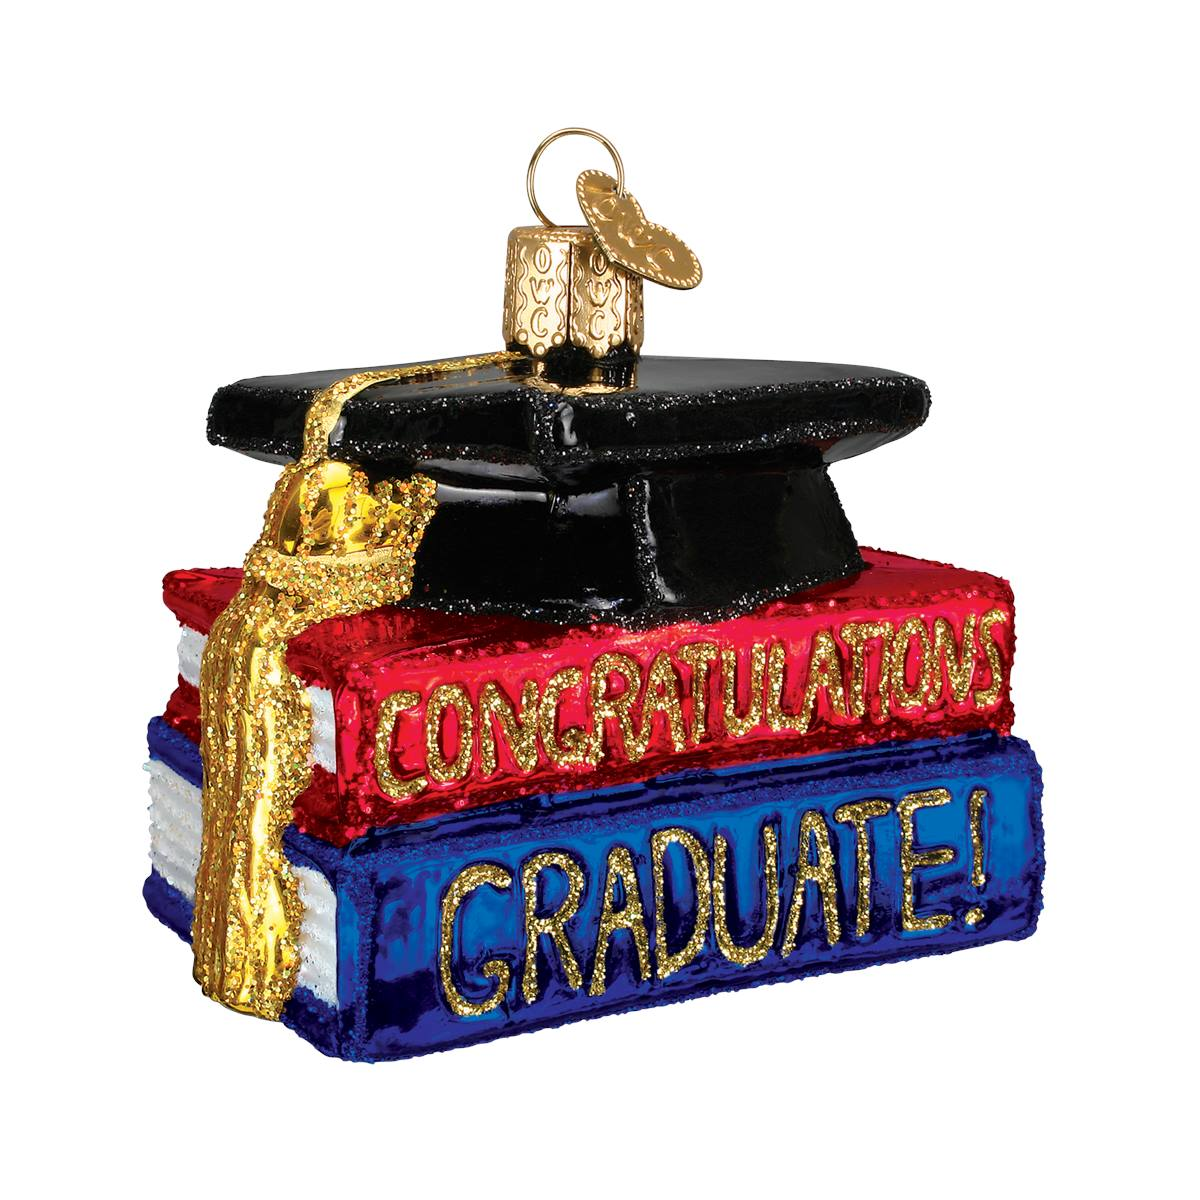 Congrats Graduate Ornament